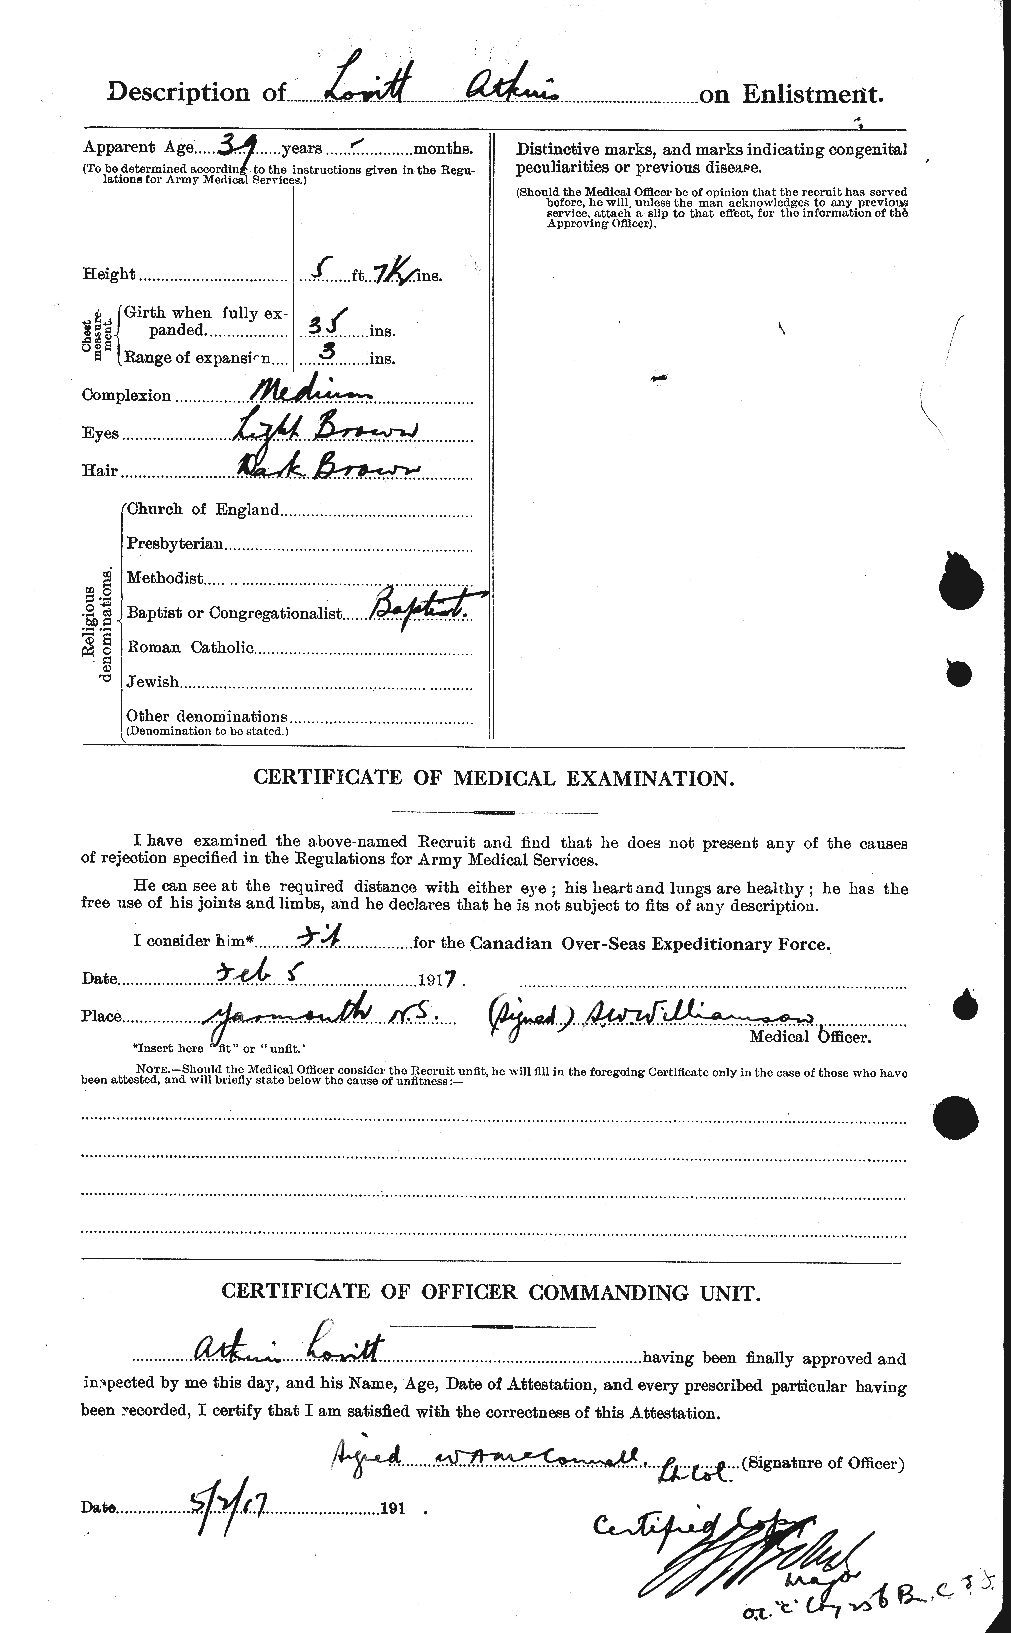 Dossiers du Personnel de la Première Guerre mondiale - CEC 216803b